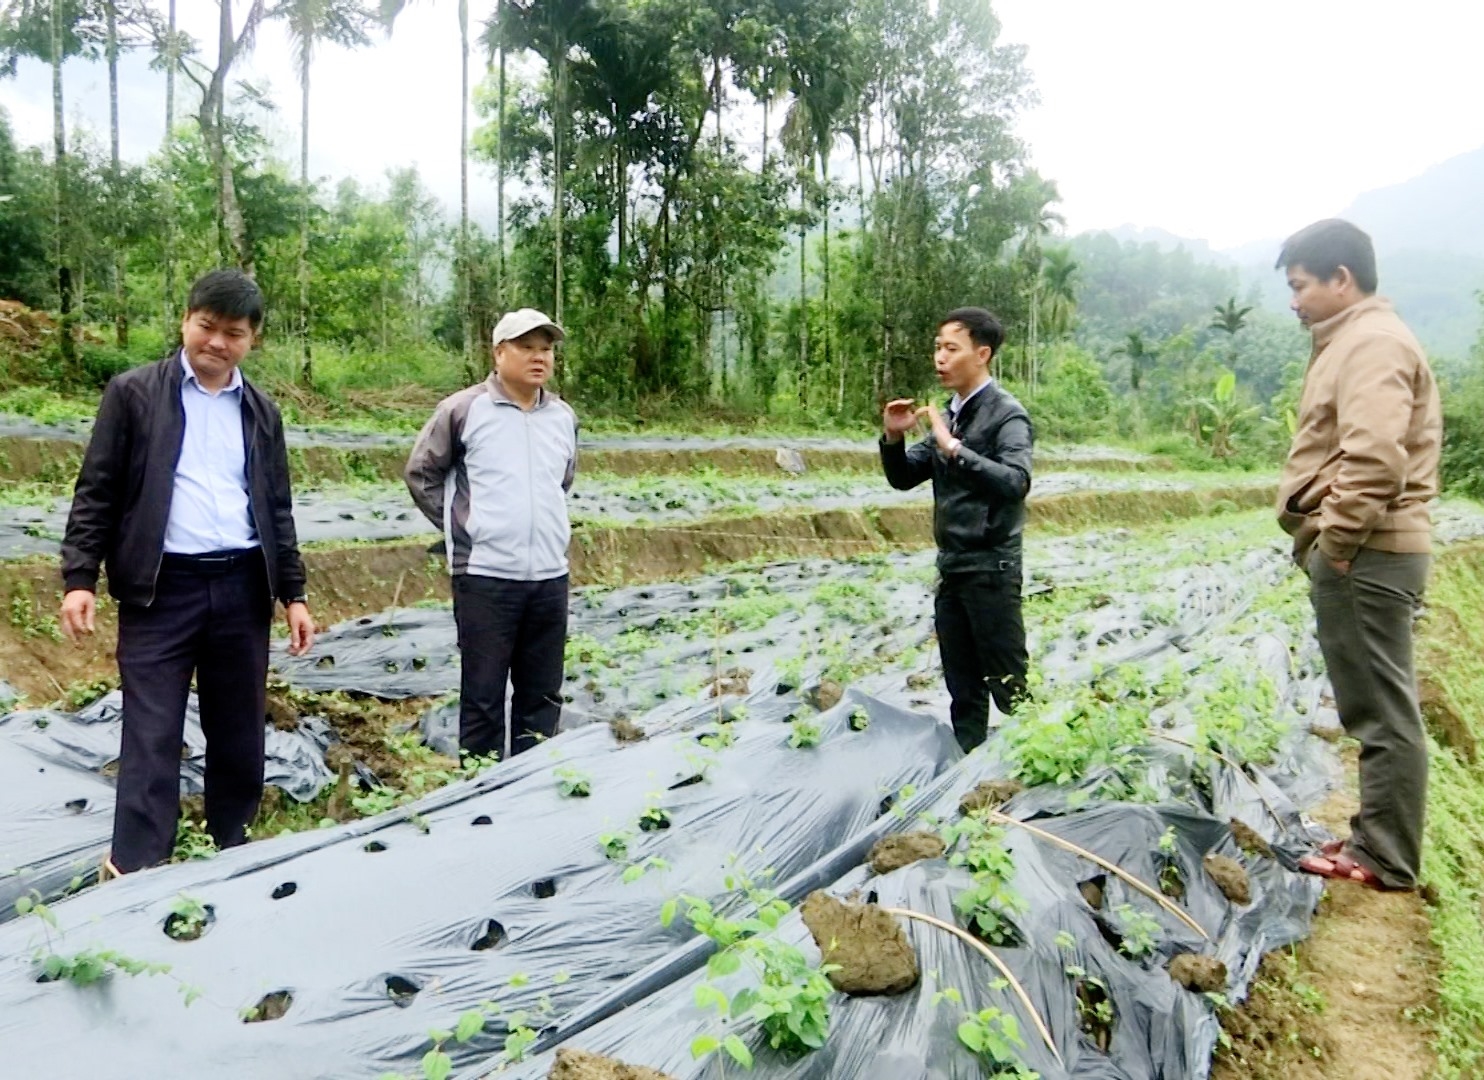 Thời gian qua, tỉnh Quảng Nam đã triển khai nhiều mô hình kinh tế giúp người dân giảm nghèo bền vững (Ảnh minh hoạ)